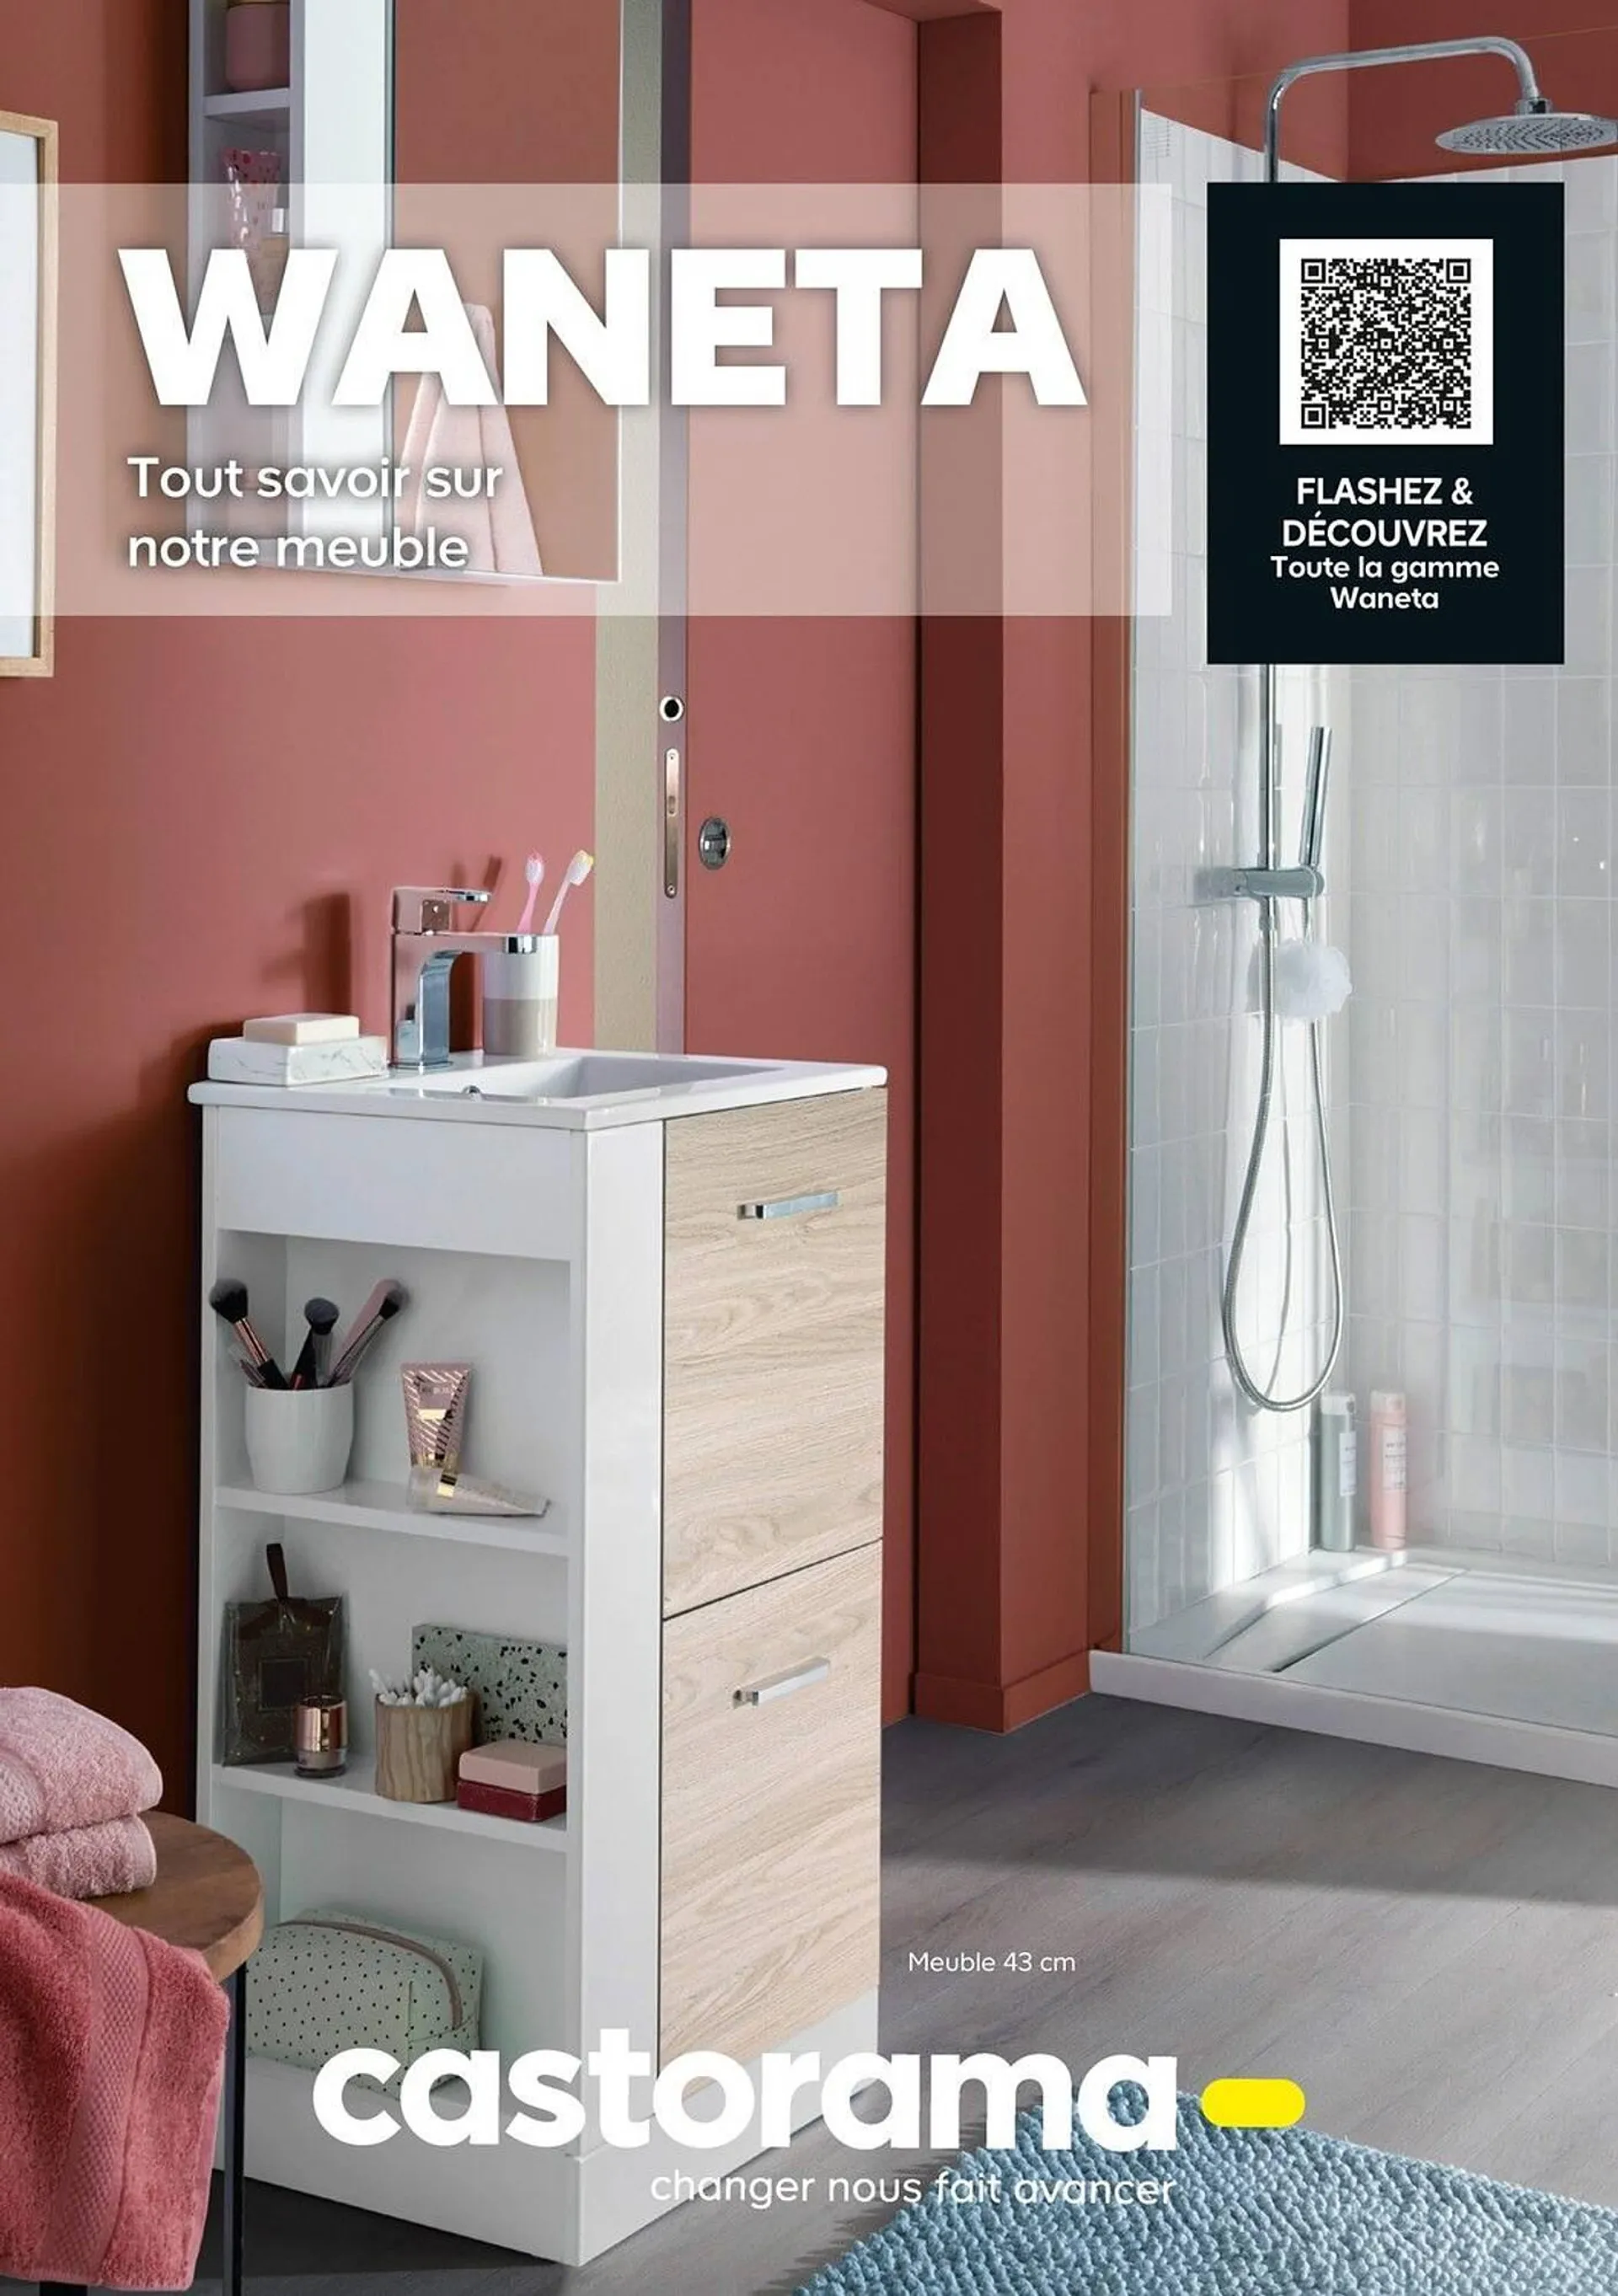 Catalogue Castorama - Waneta - 1